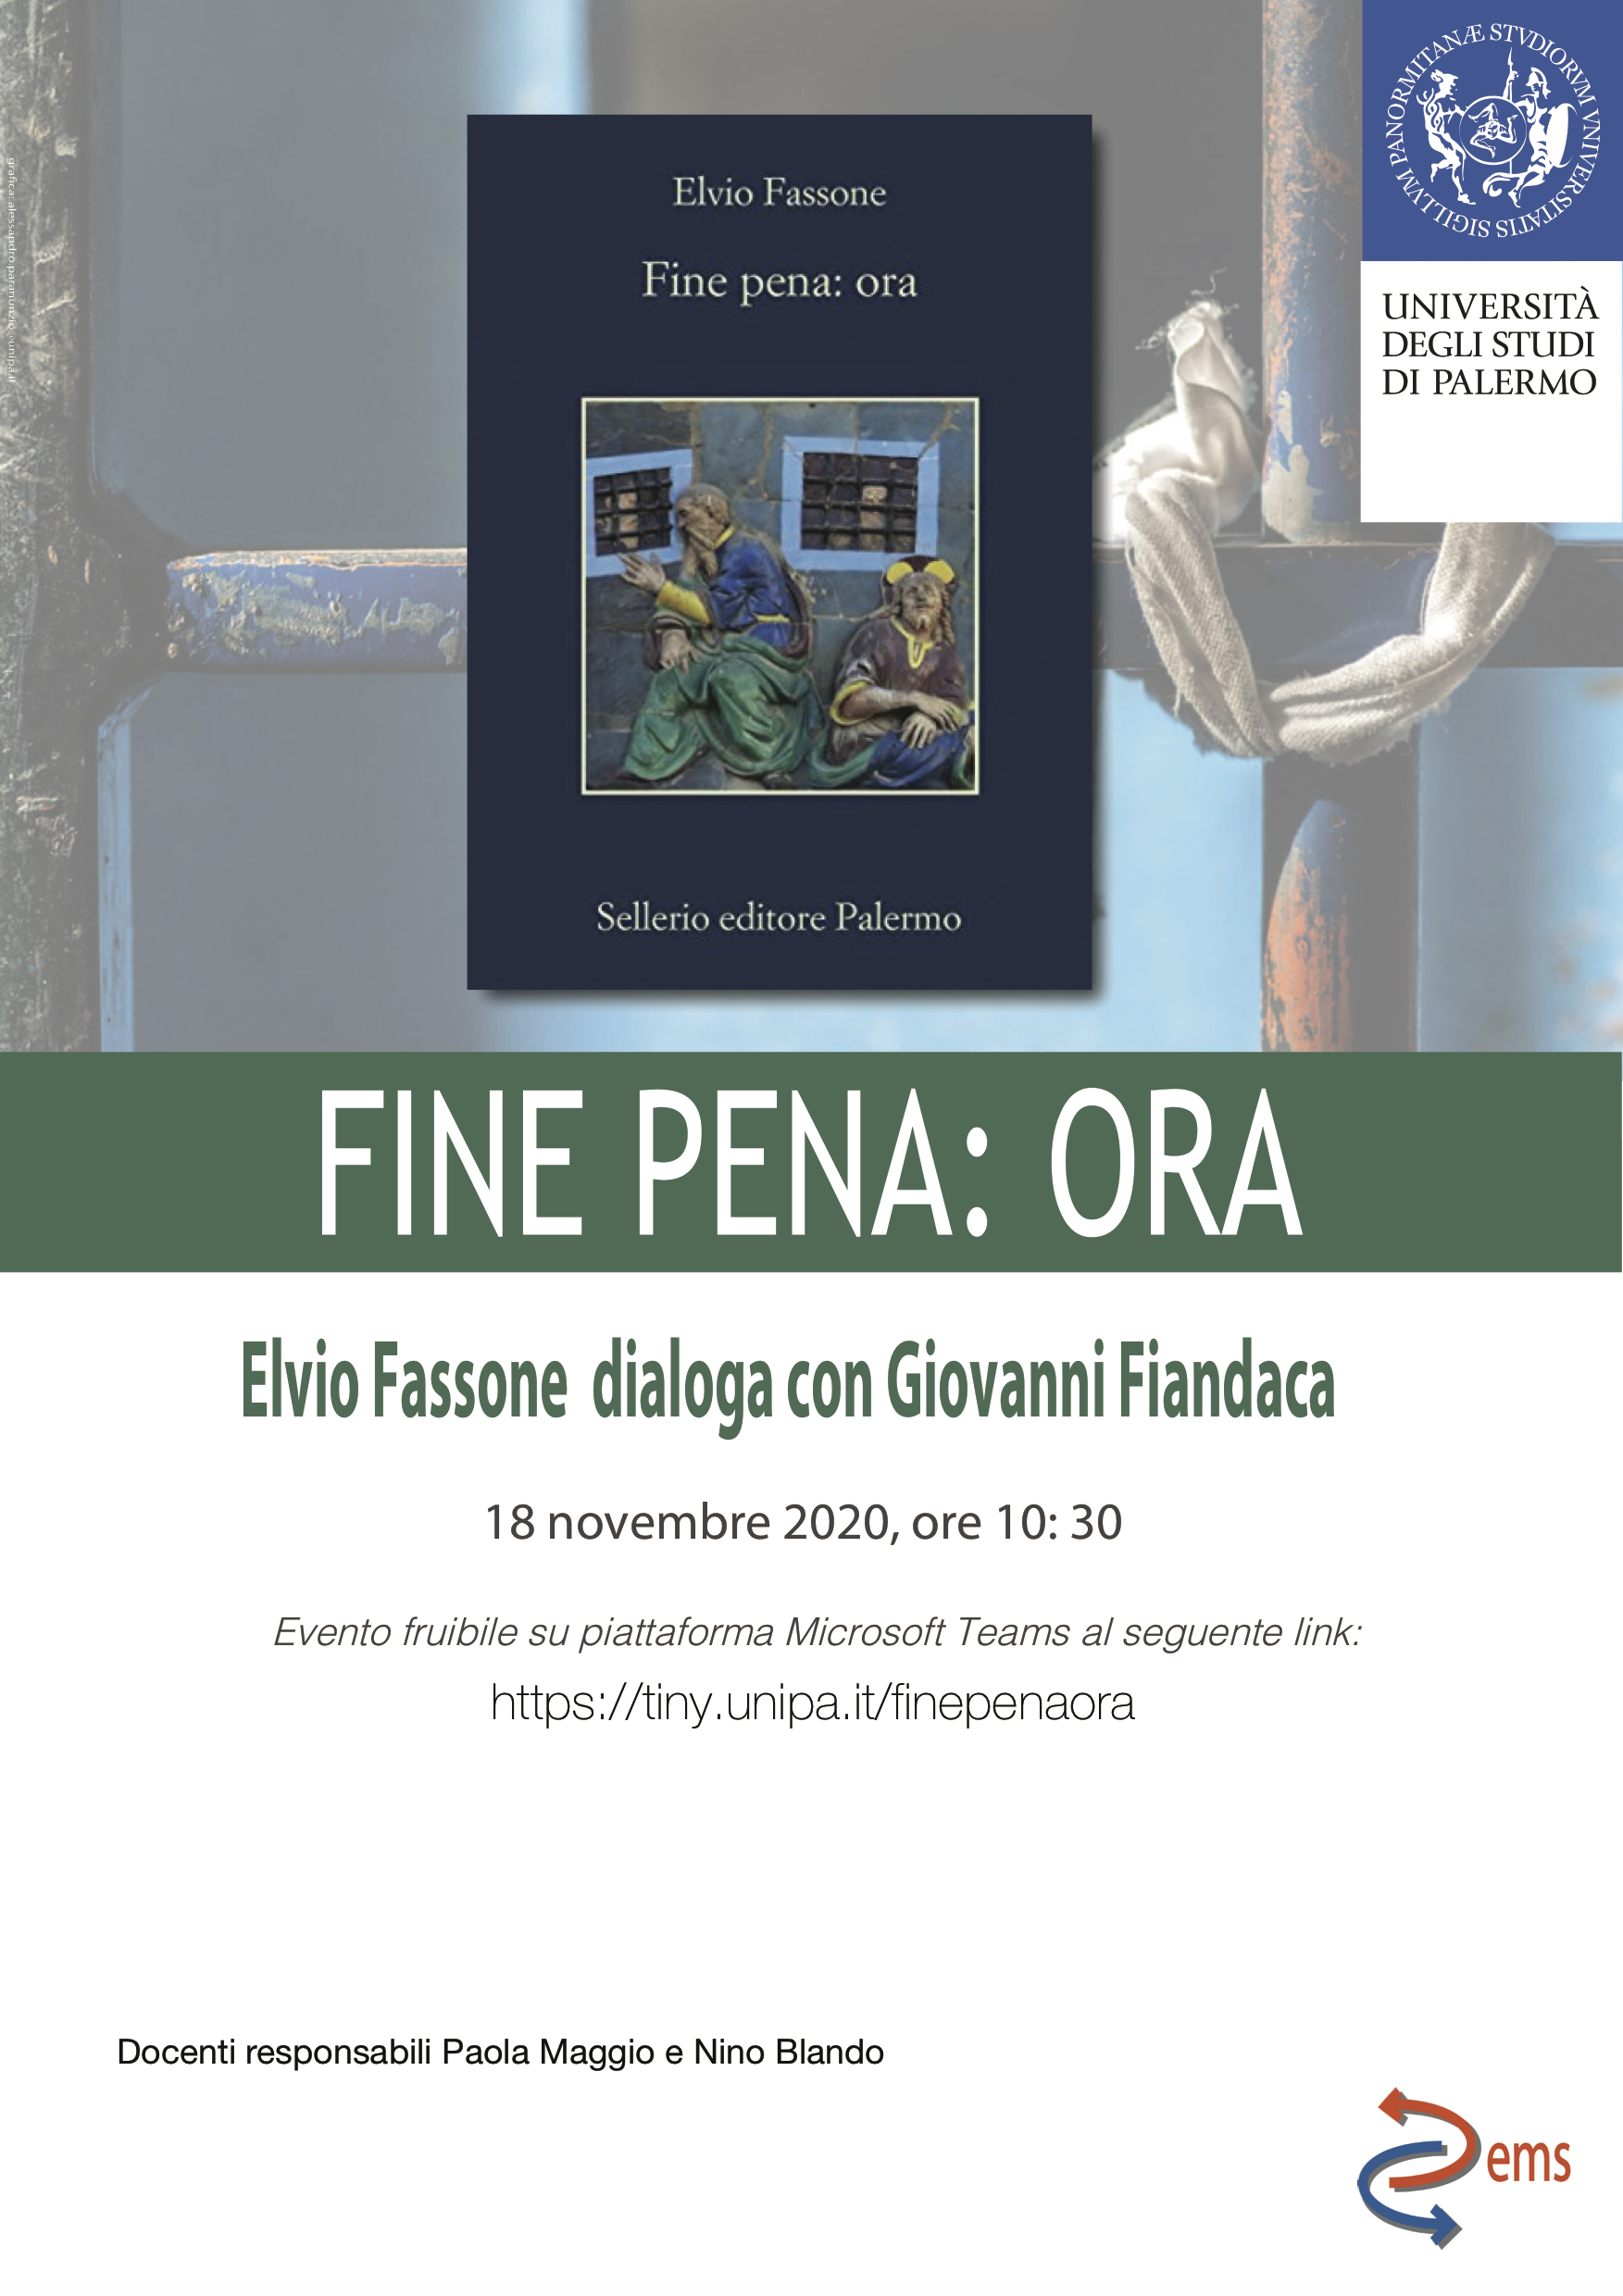 Fine pena: ora - Elvio Fasone dialoga con Giovanni Fiandaca